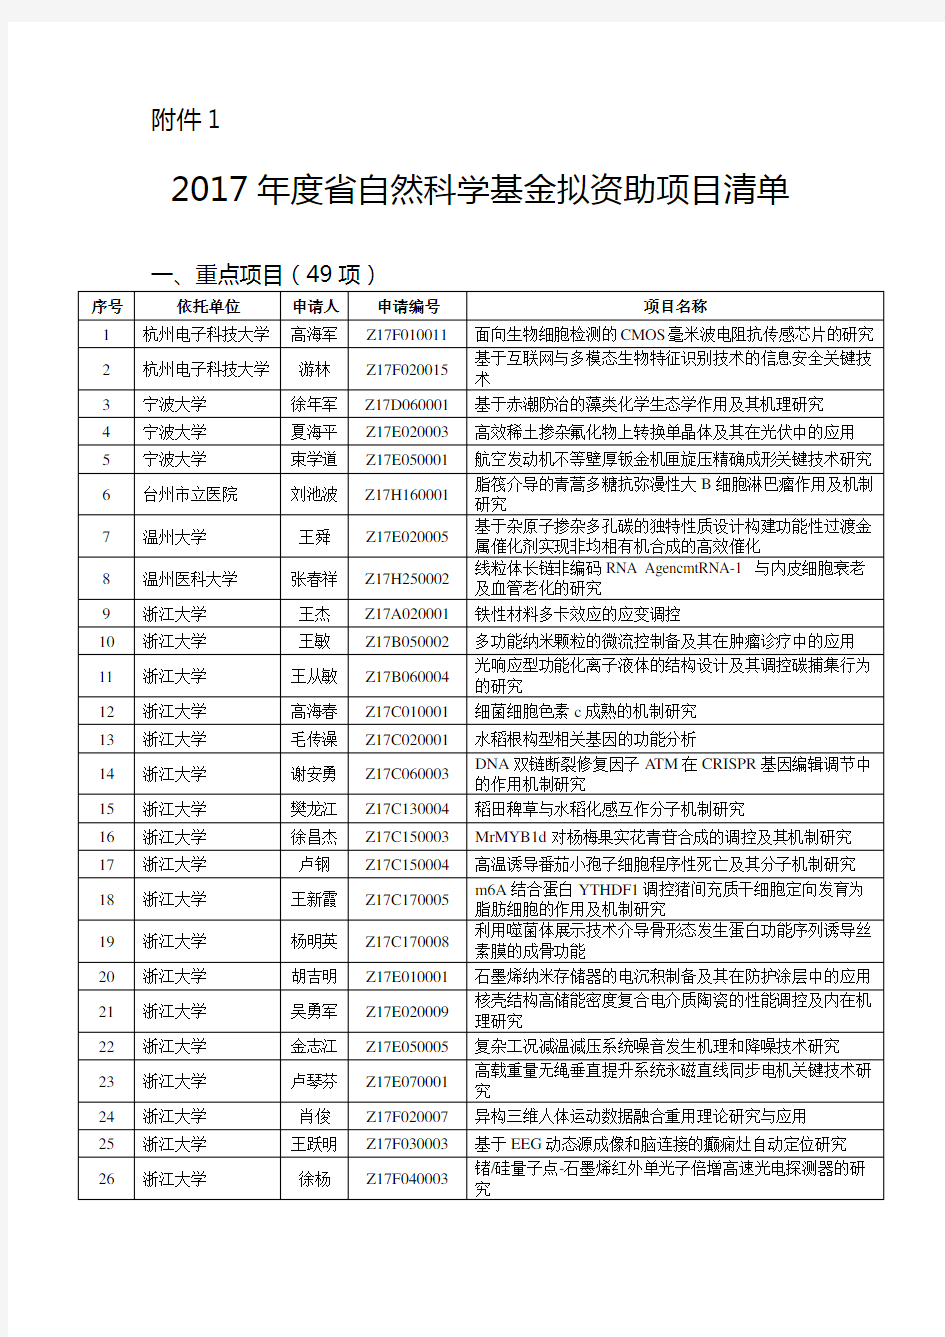 2017年度浙江省自然科学基金拟资助项目清单